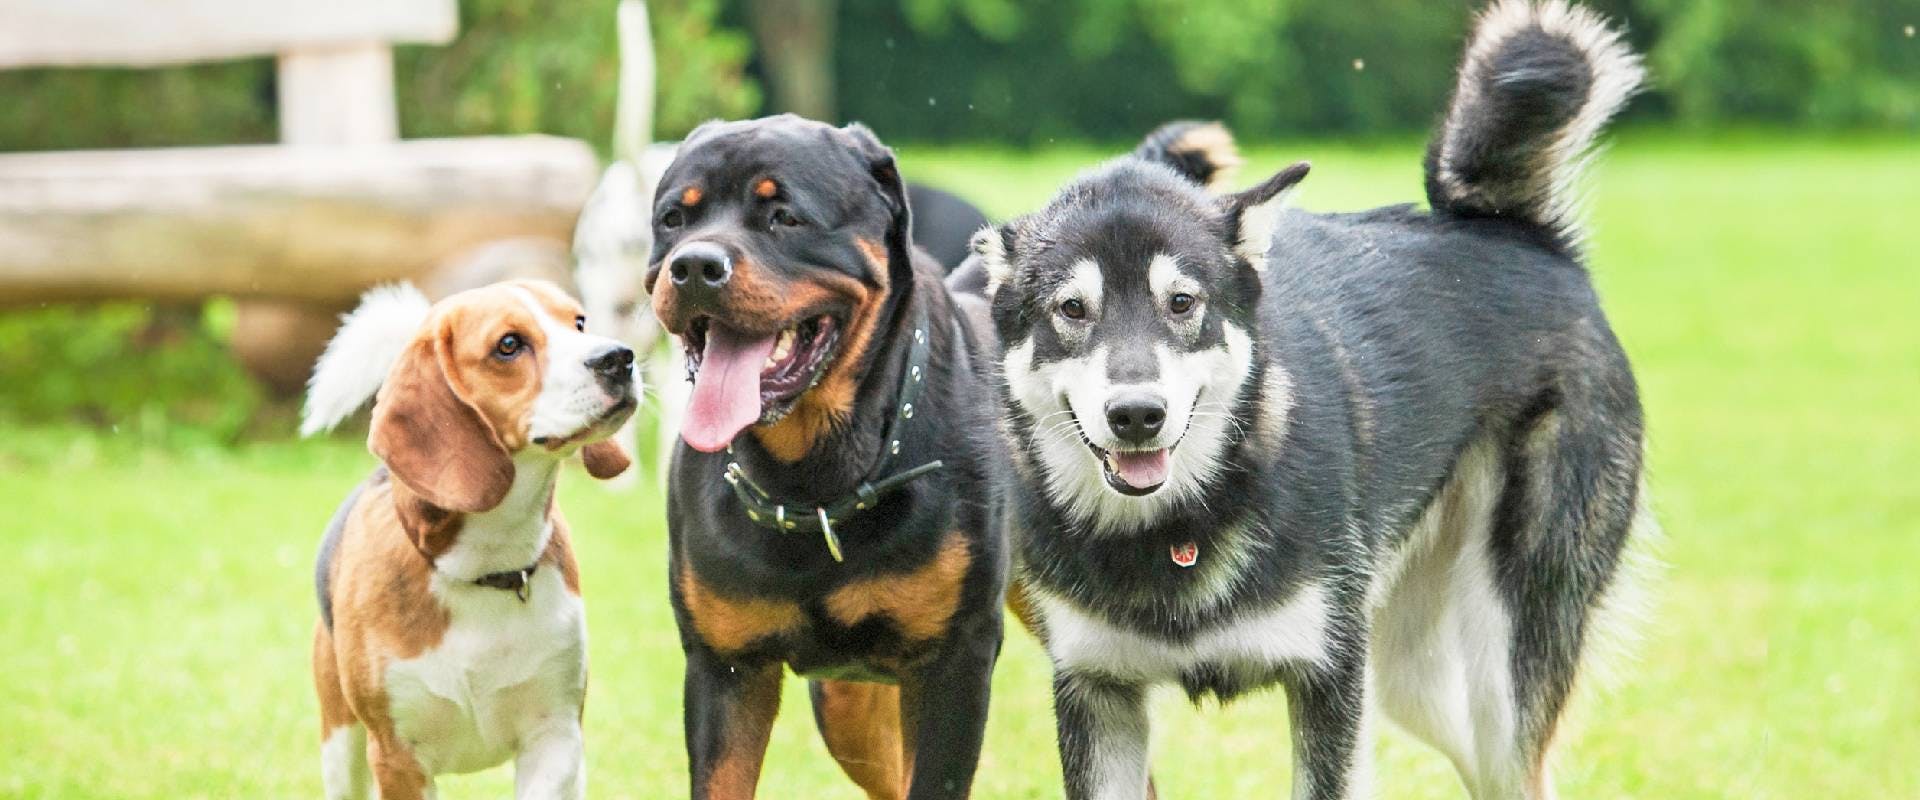 A beagle, Rottweiller and a wolf dog